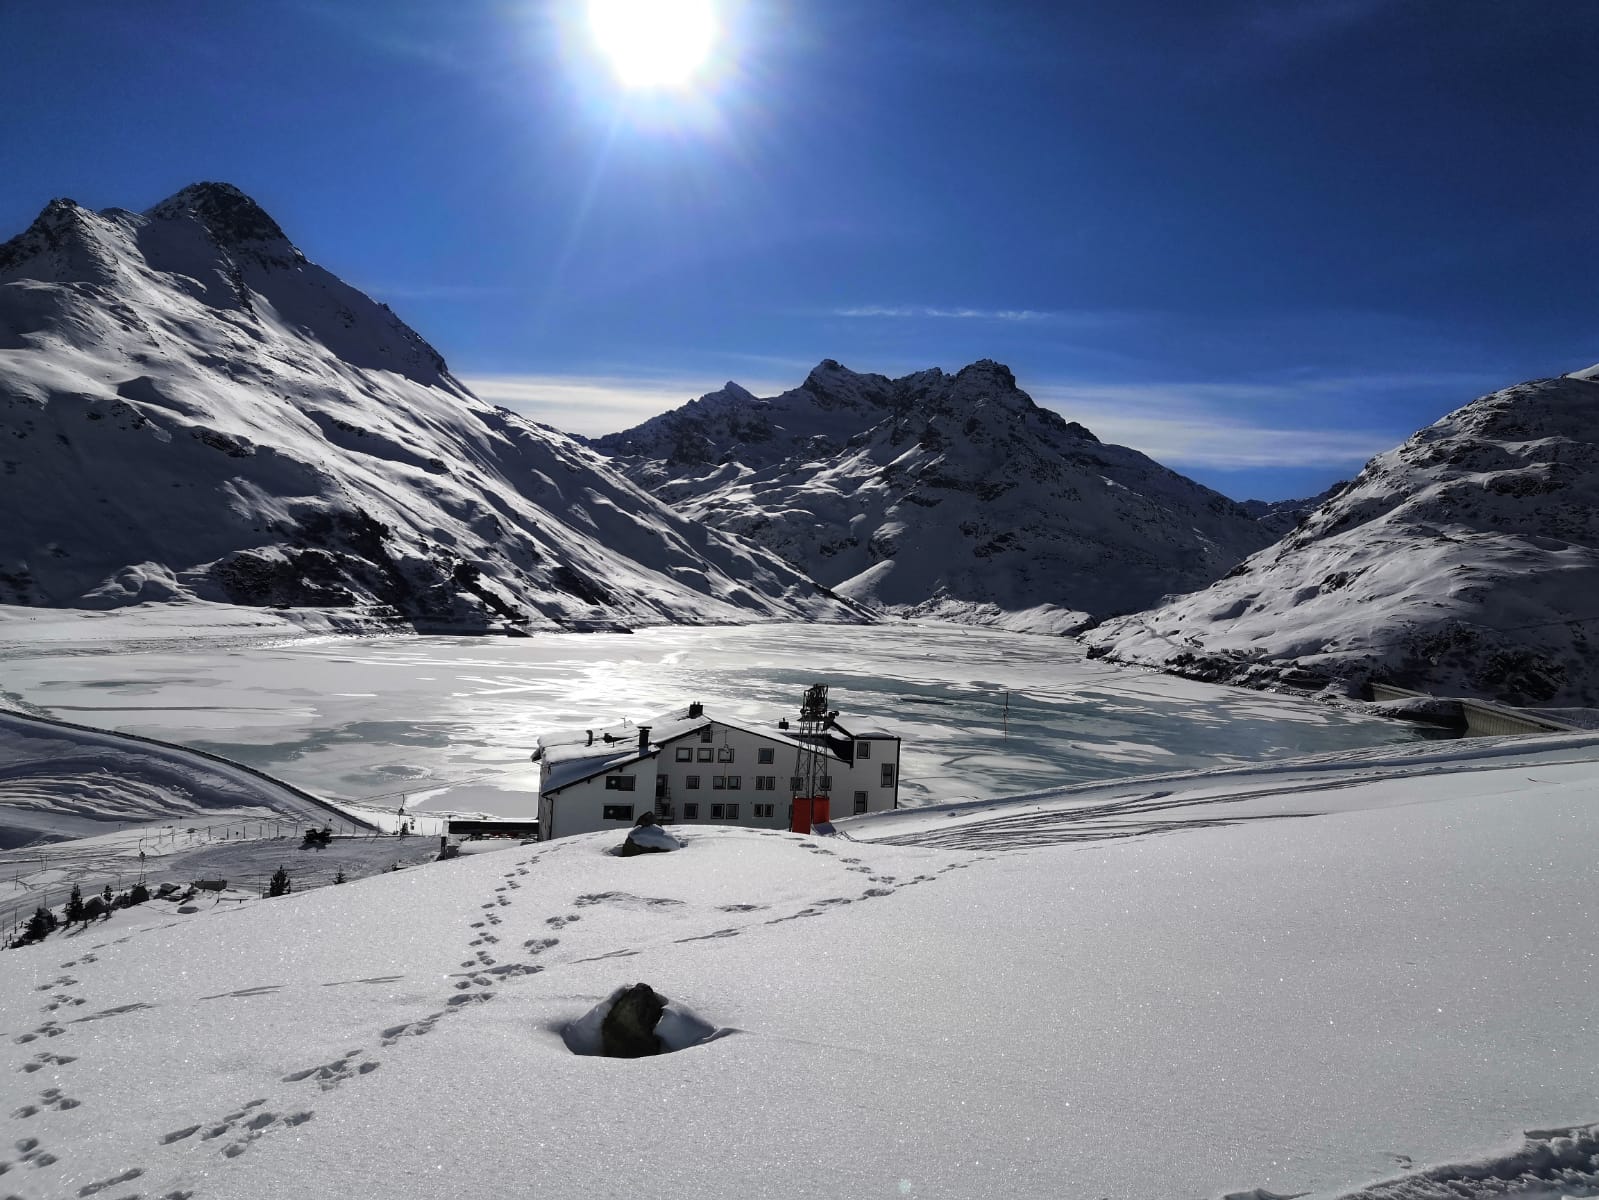 Schneeschuhwanderung zum Silvrettasee_ Blick auf den Silvrettasee2_(c) mateoundelena